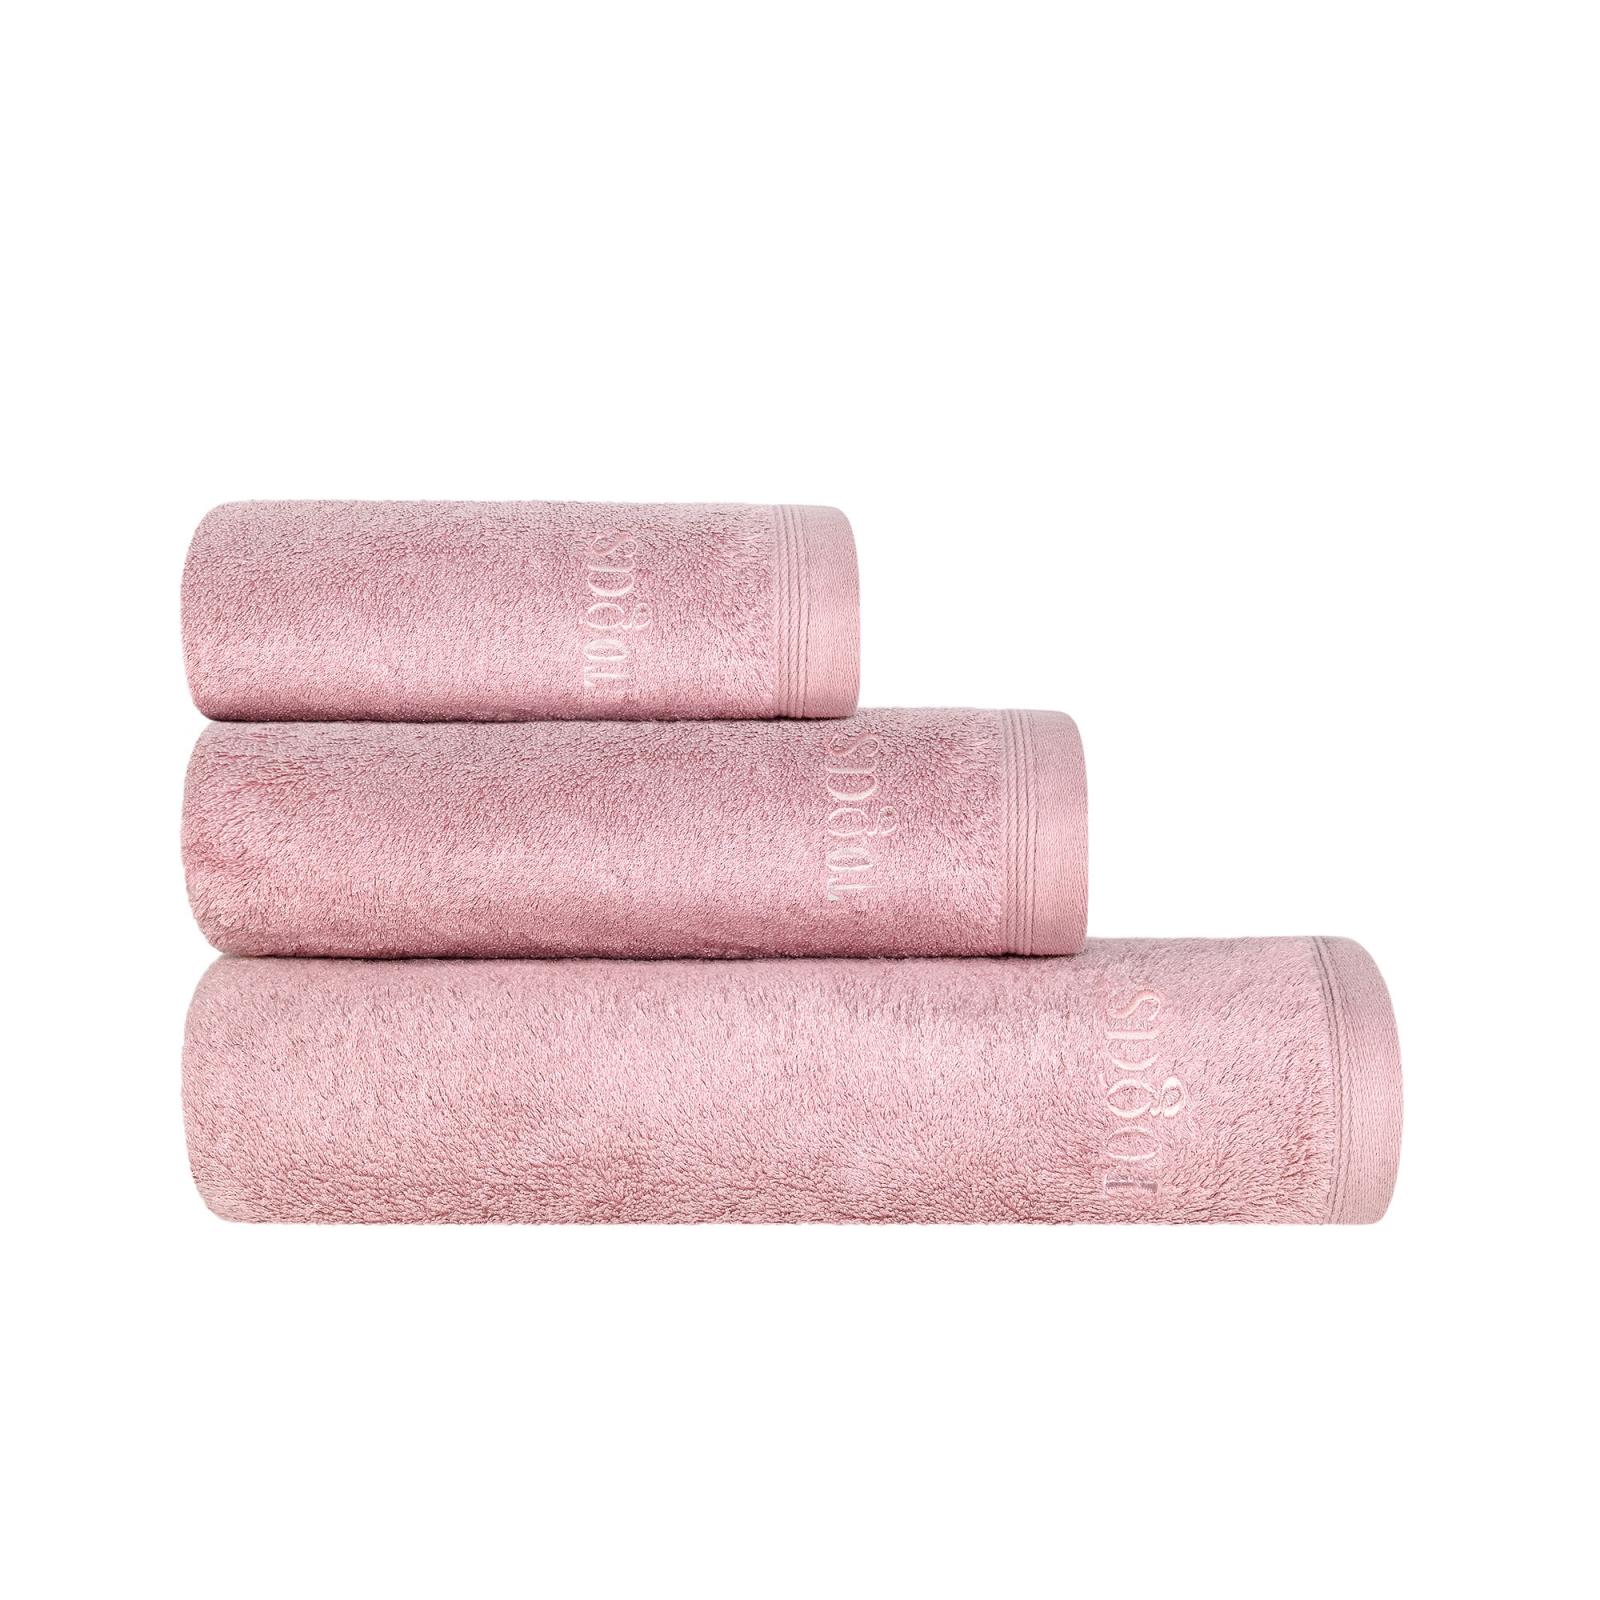 Полотенце Togas Пуатье розовое 70х140 см (10.00.01.1046) полотенце 40х60 см пуатье сливовое togas